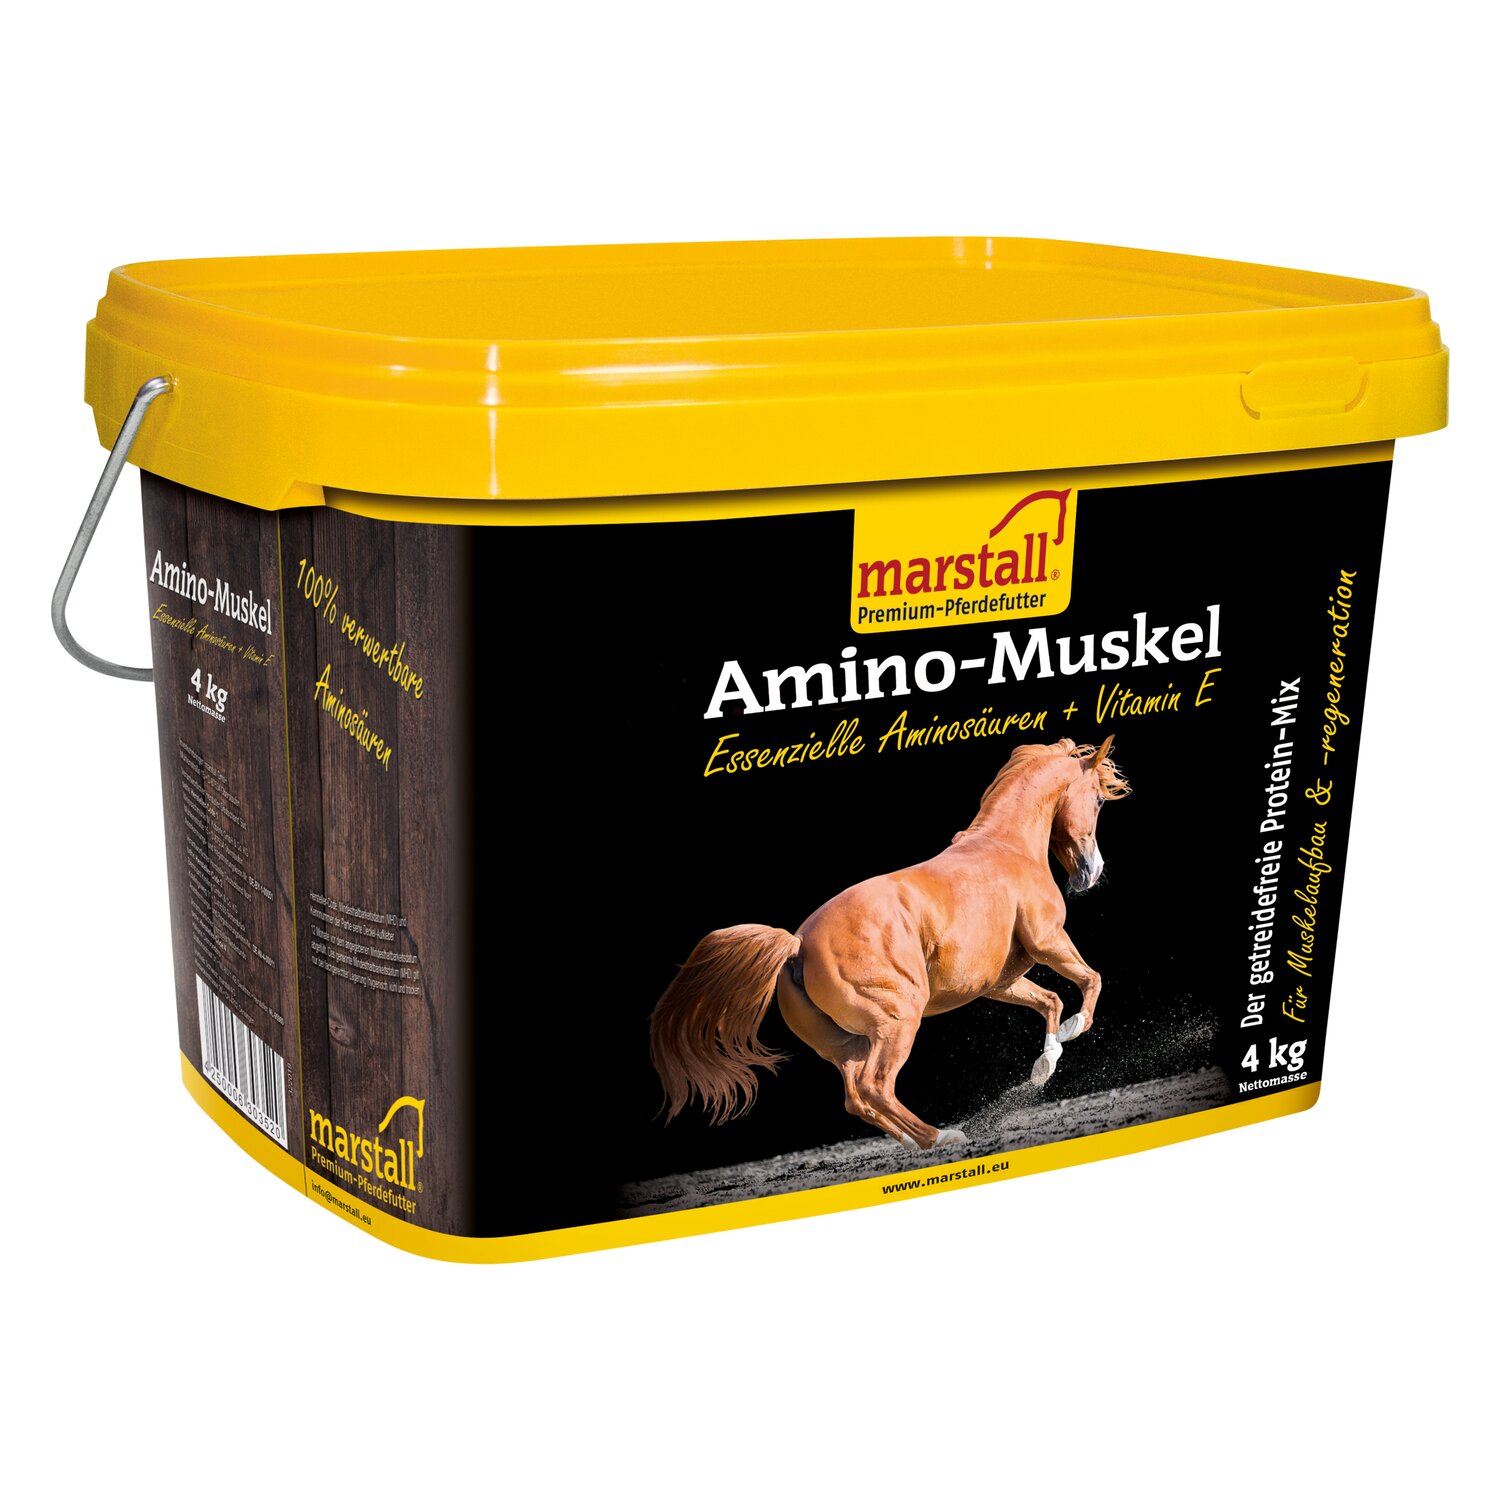 marstall Amino-Muskel 10 kg